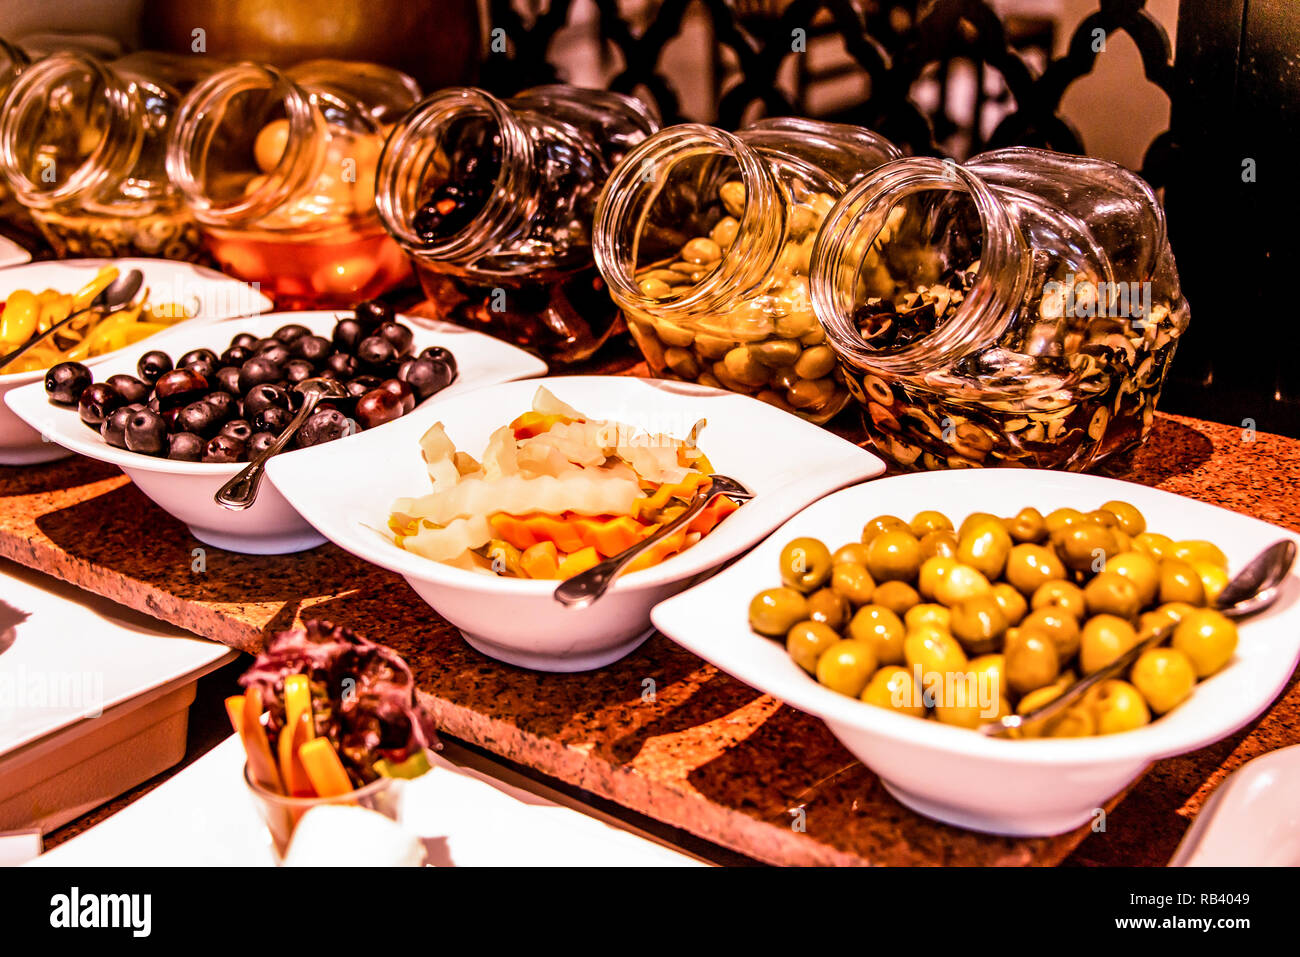 Vielzahl Essen am Tisch, Wein, Snacks, Oliven, Käse und andere Vorspeise, italienische Antipasti auf Platte Stockfoto